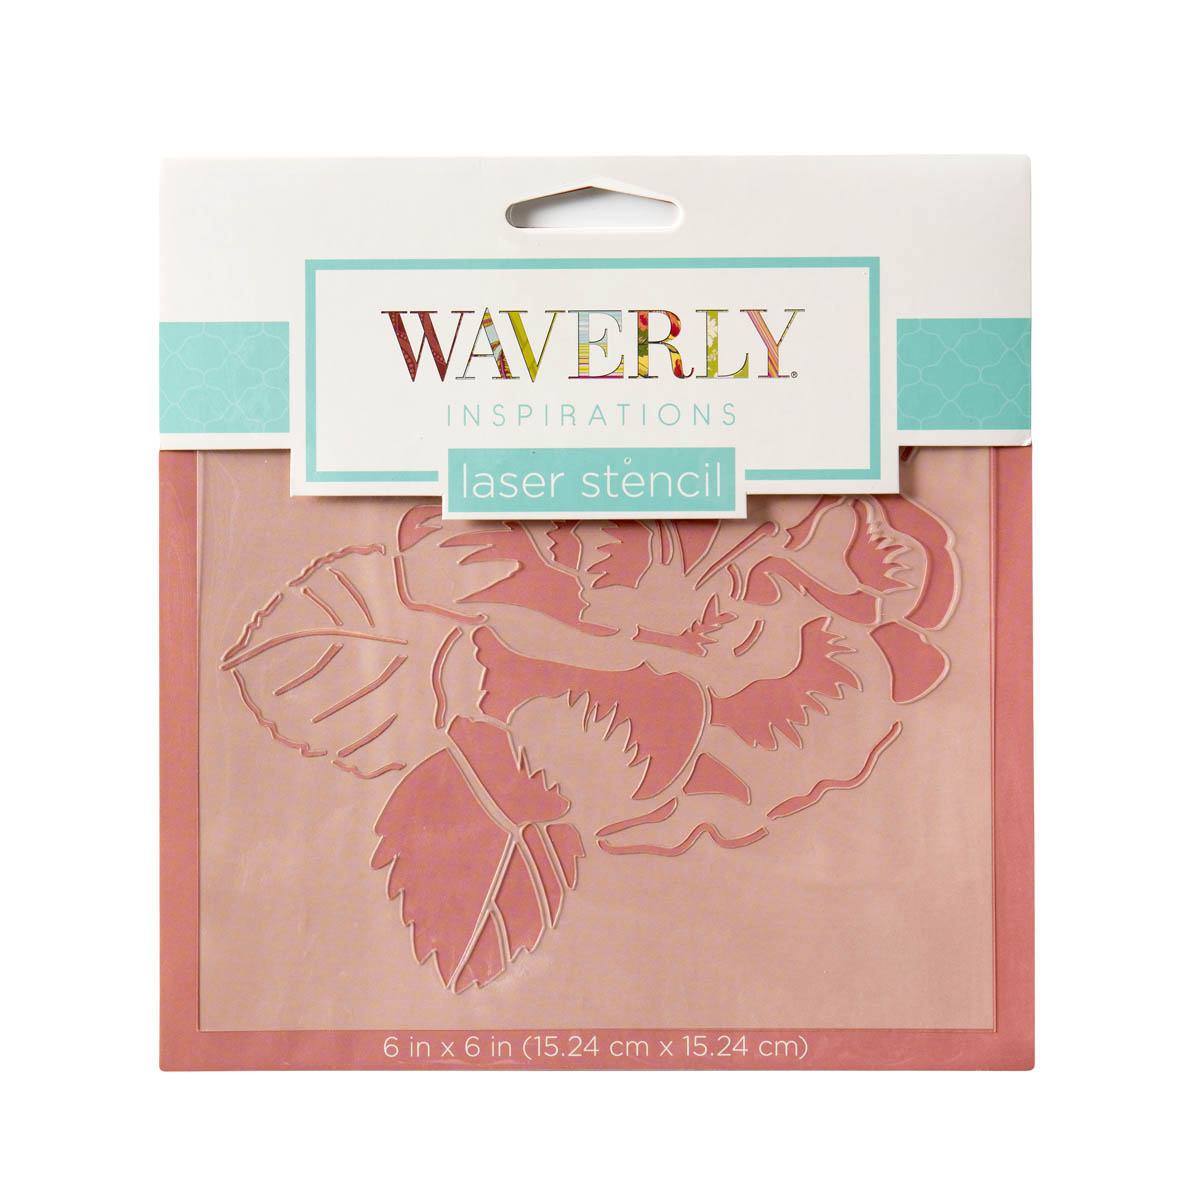 Waverly ® Inspirations Laser Stencils - Accent - Garden, 6